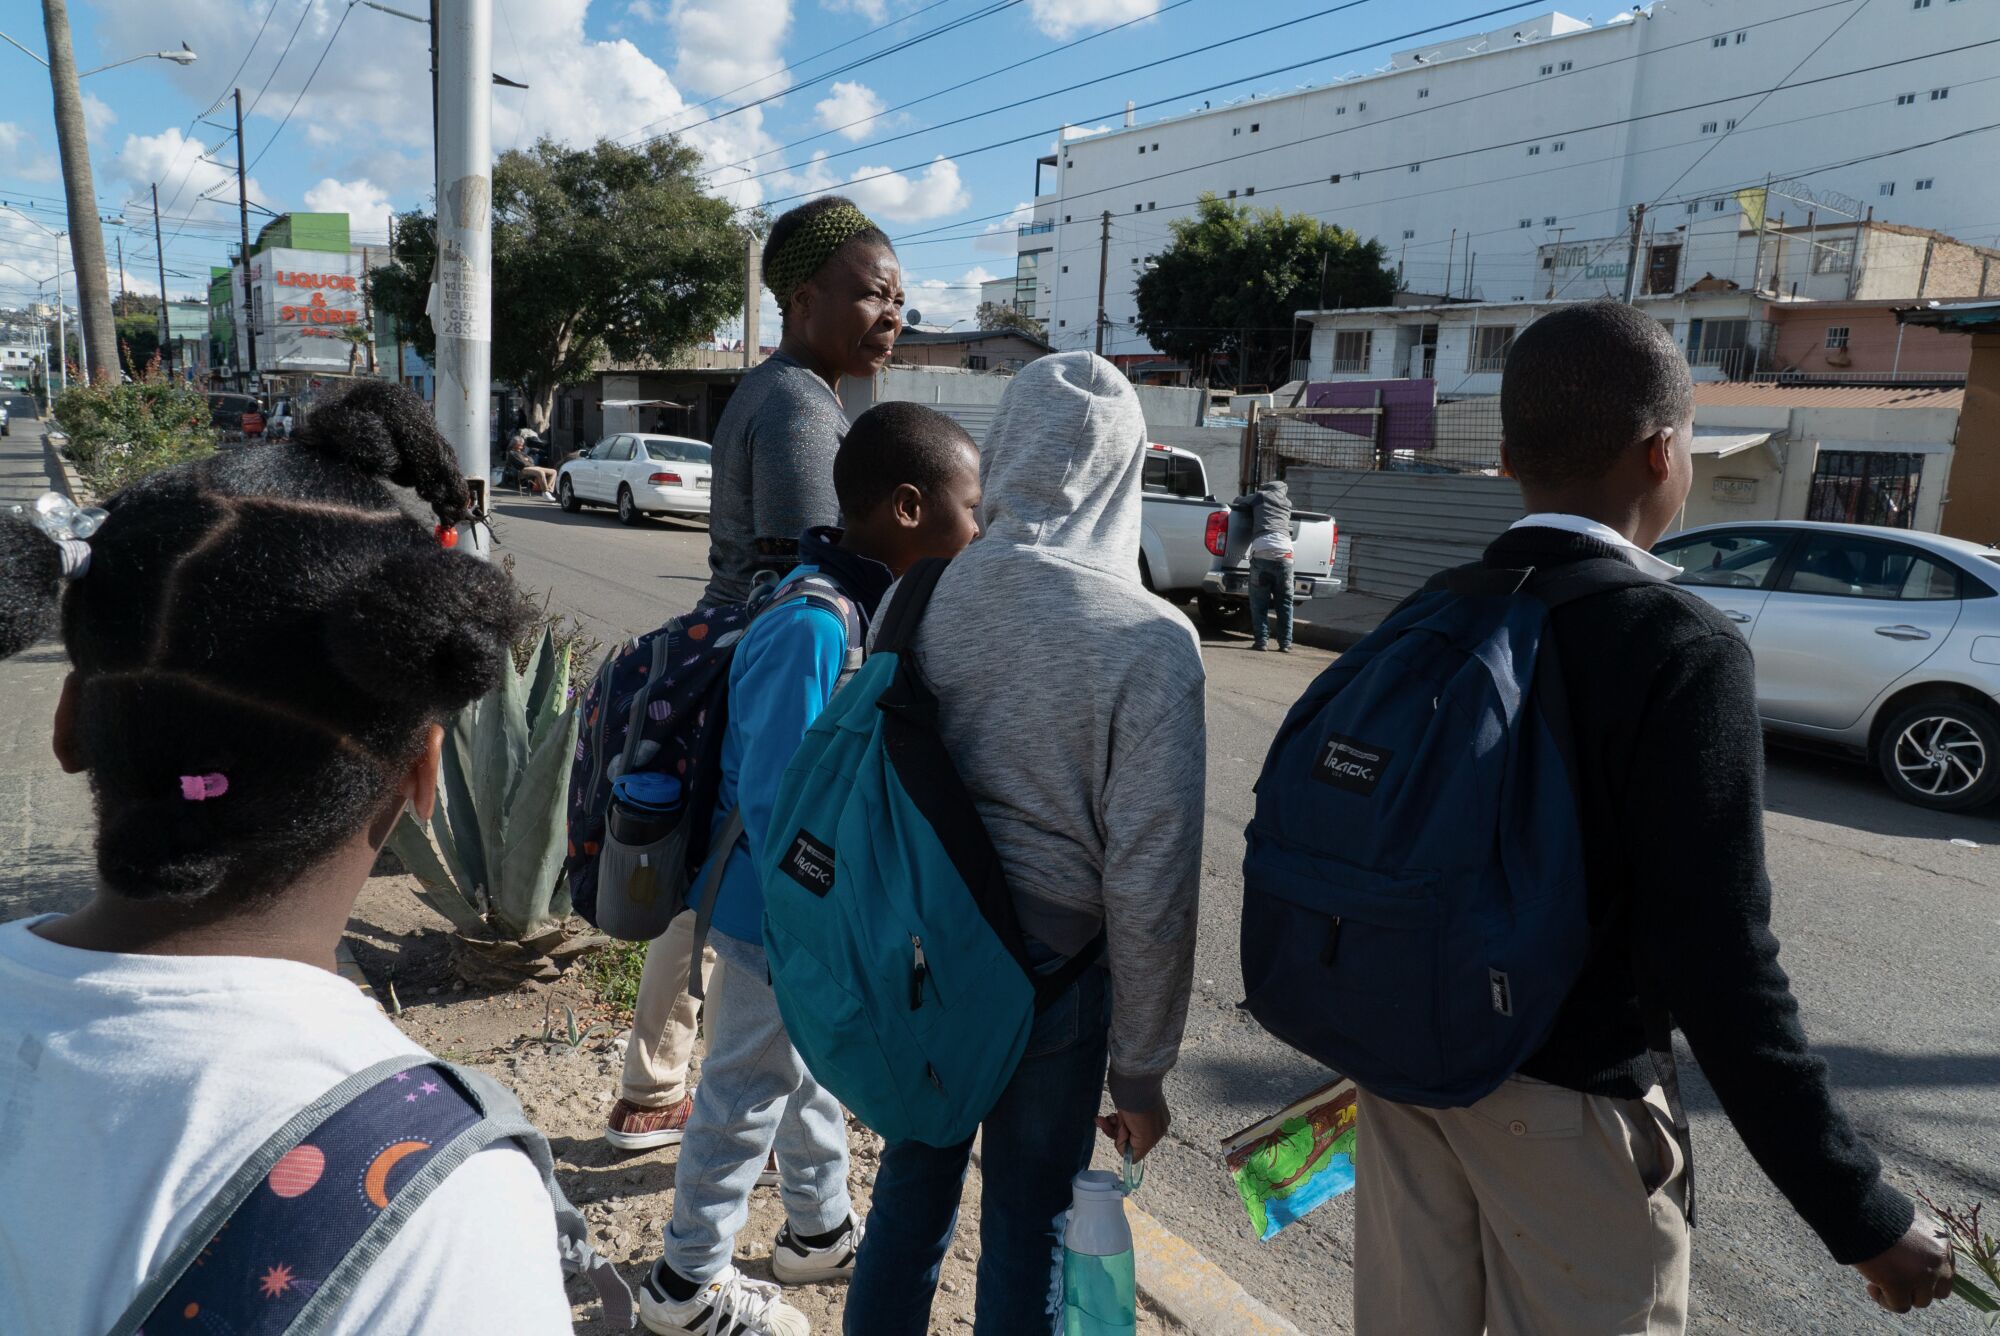 Antoinette Darelus, walks her children and two neighbors to school in downtown Tijuana.